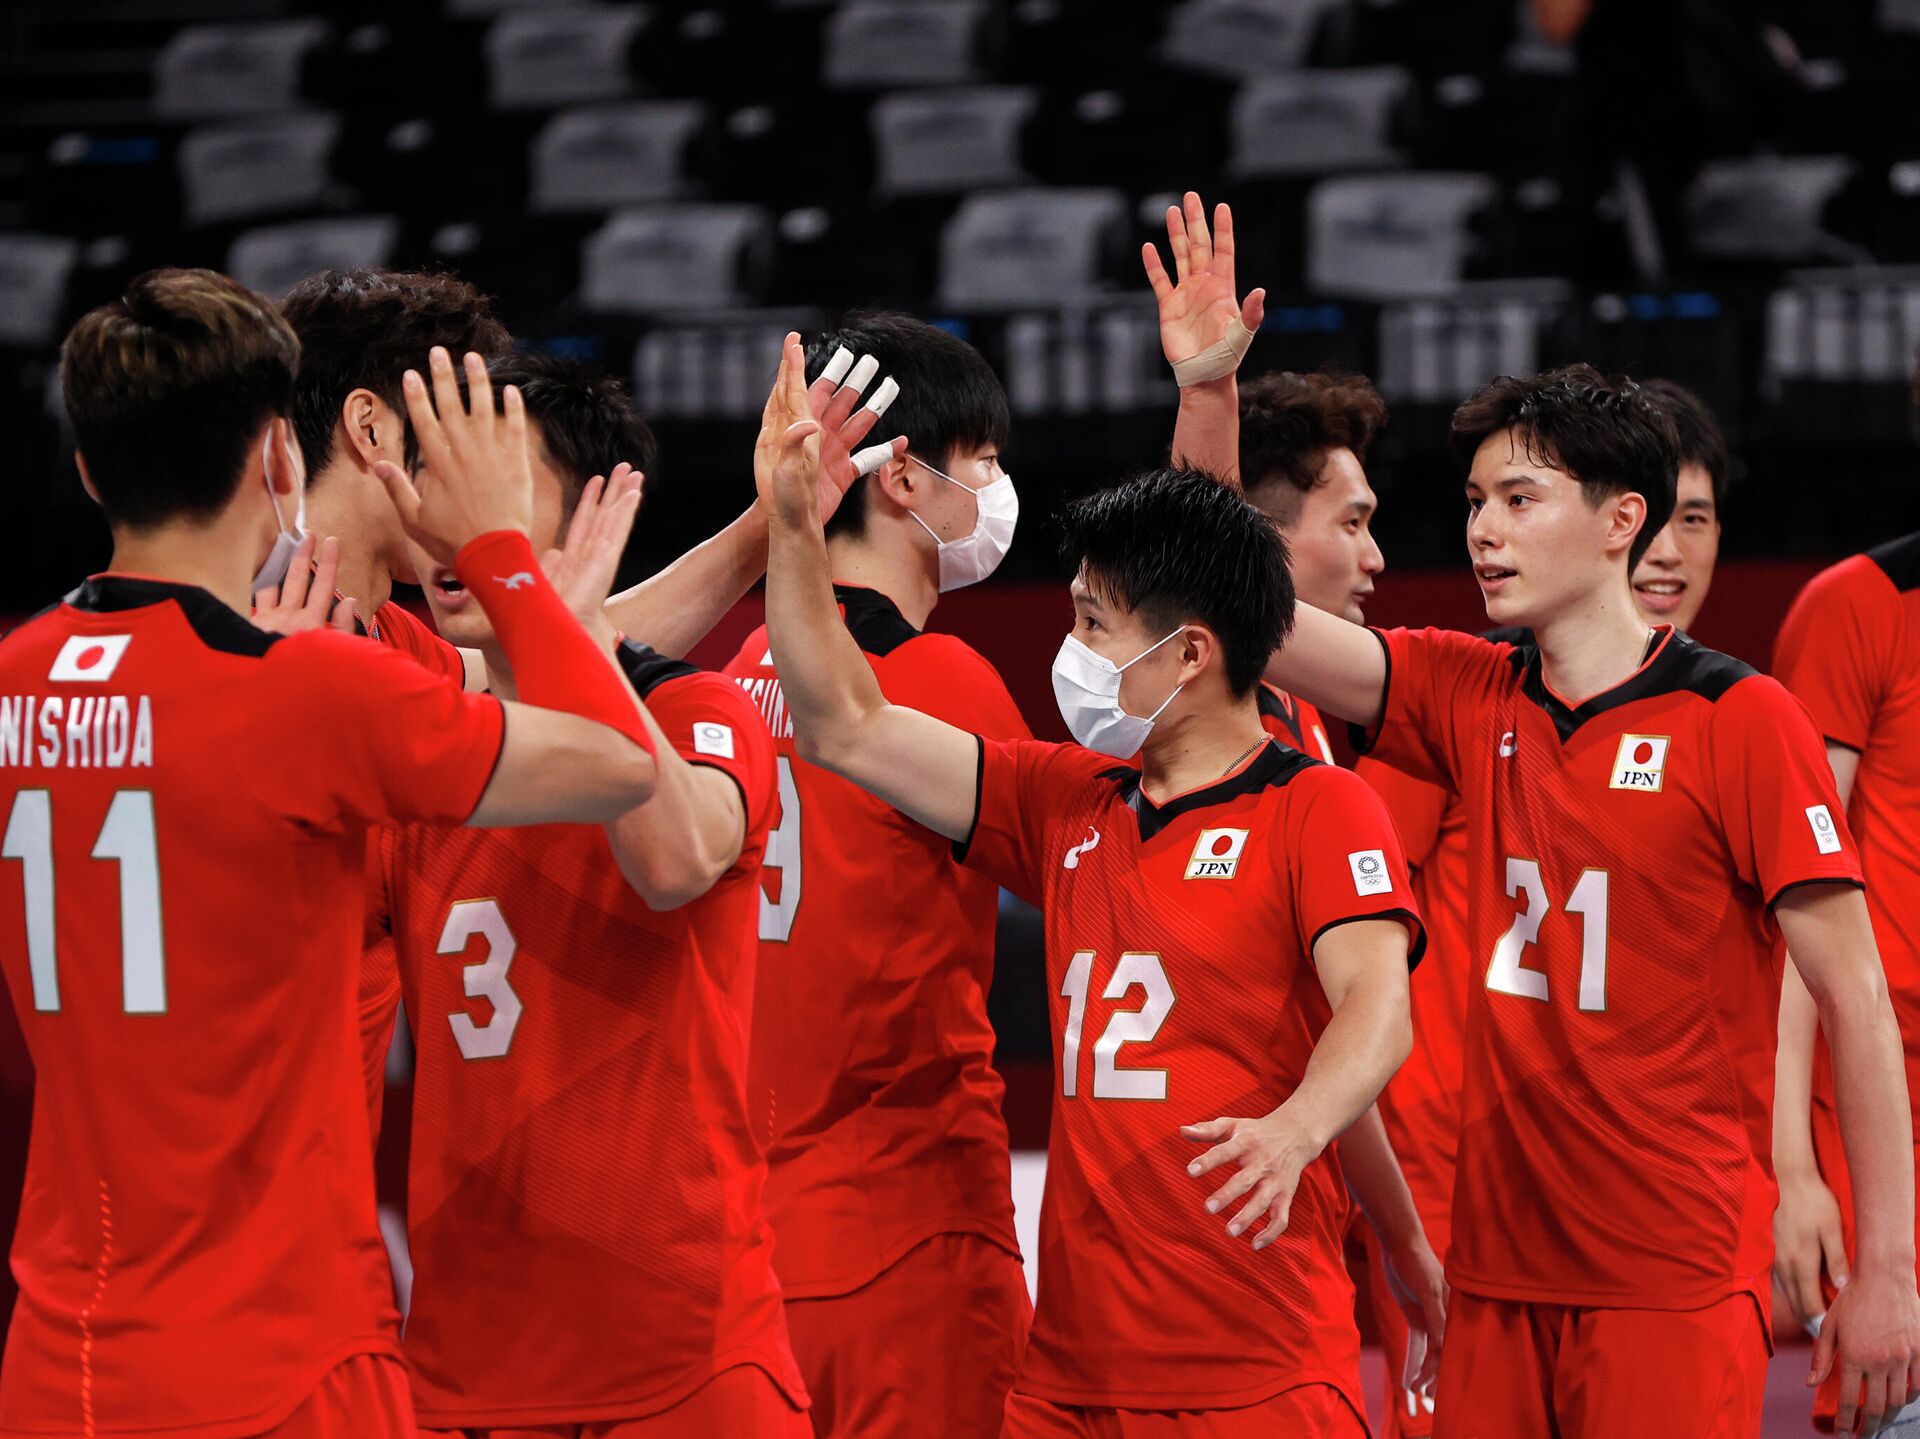 Япония волейбол мужчины. Мужская сборная Японии по волейболу волейболисты Японии. Сборная Японии по волейболу мужская рост 2022. Волейбольная команда Японии мужская сборная. Либеро сборной Японии по волейболу мужчины.